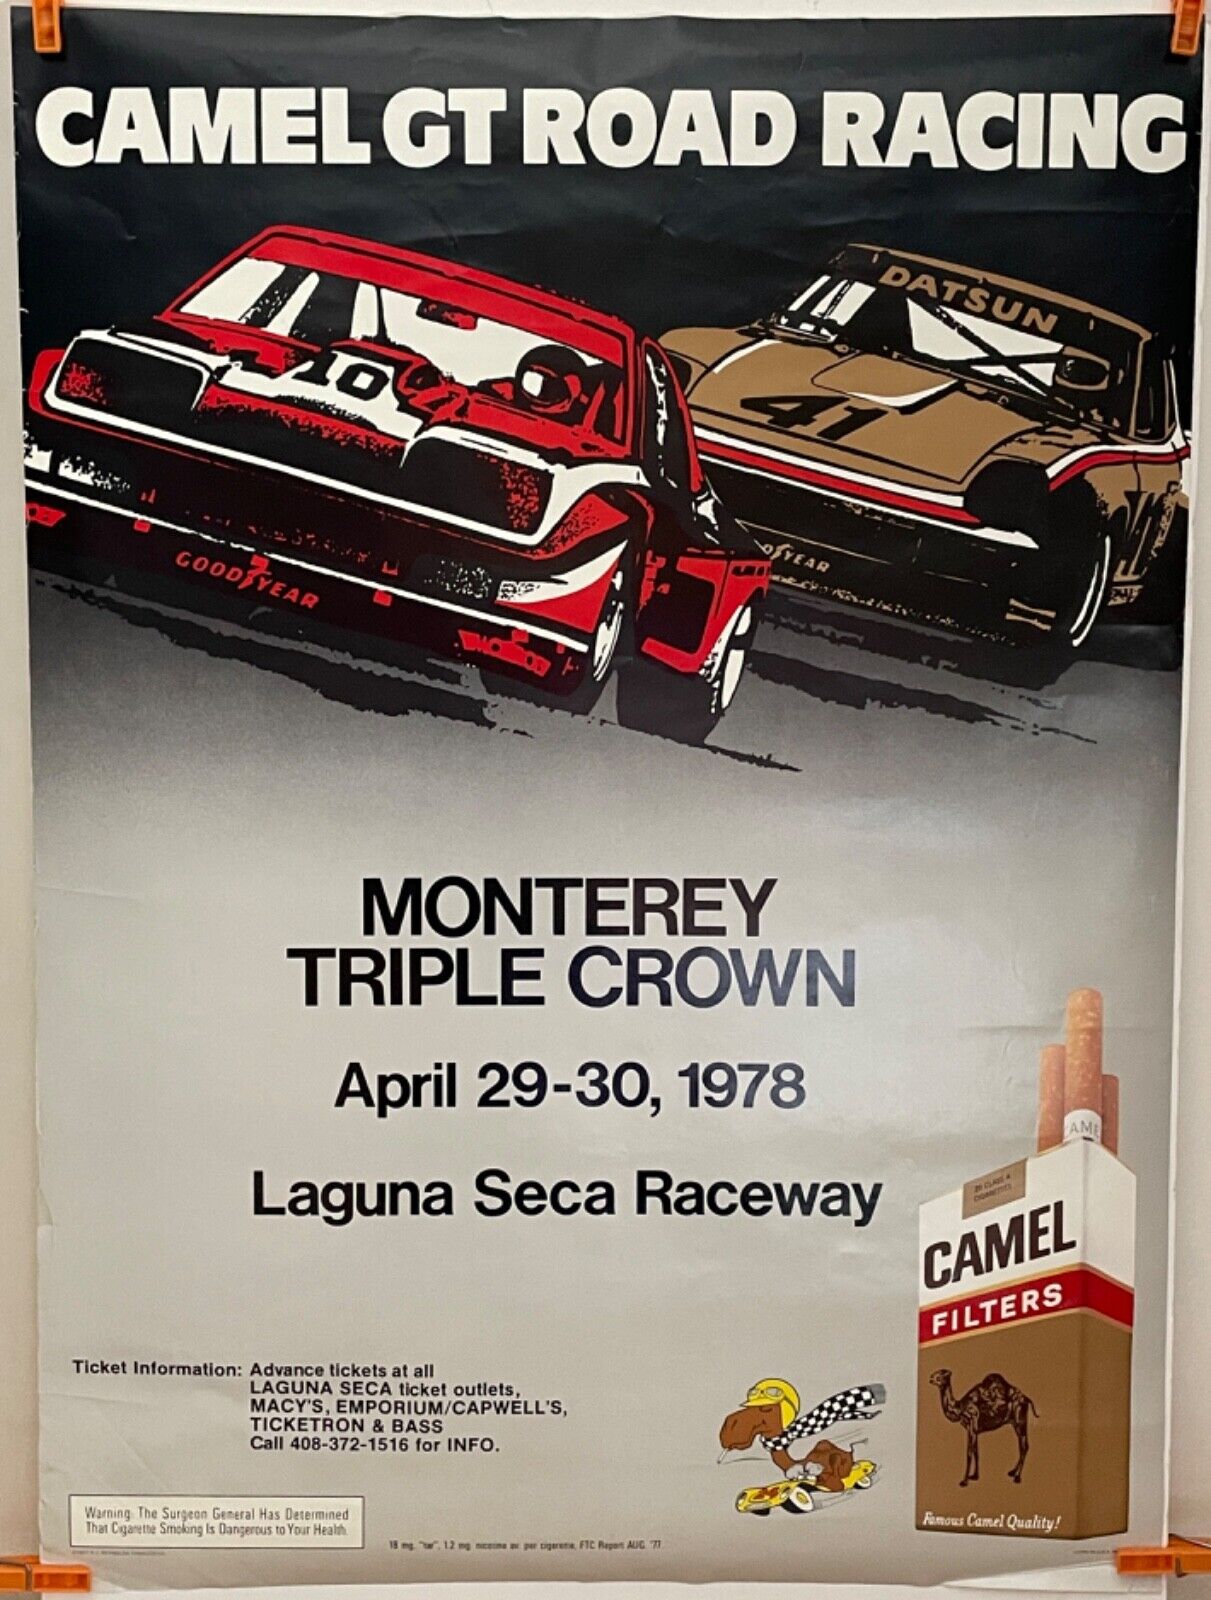 VINTAGE ORIG CAMEL GT ROAD RACING POSTER MONTEREY TRIPLE CROWN LAGUNA SECA 1978 